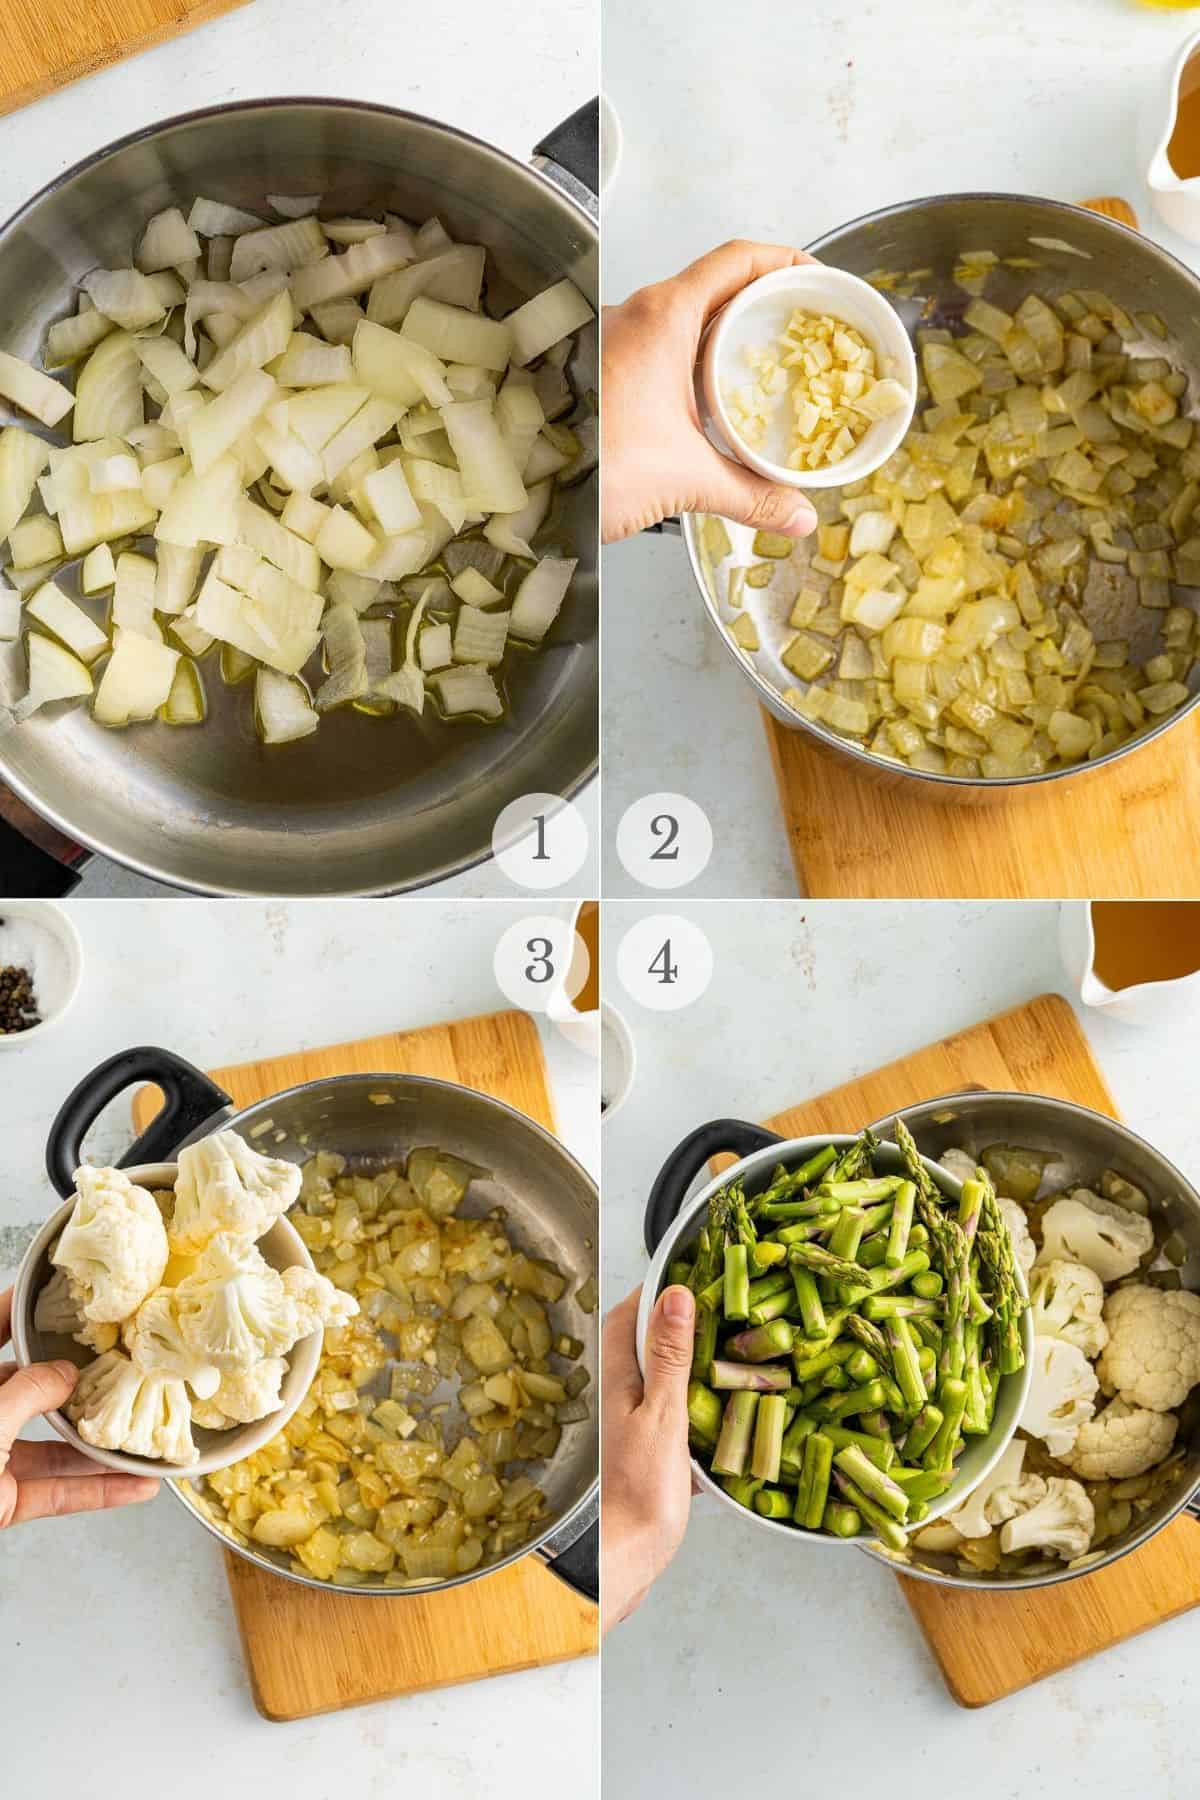 asparagus soup recipe steps 1-4